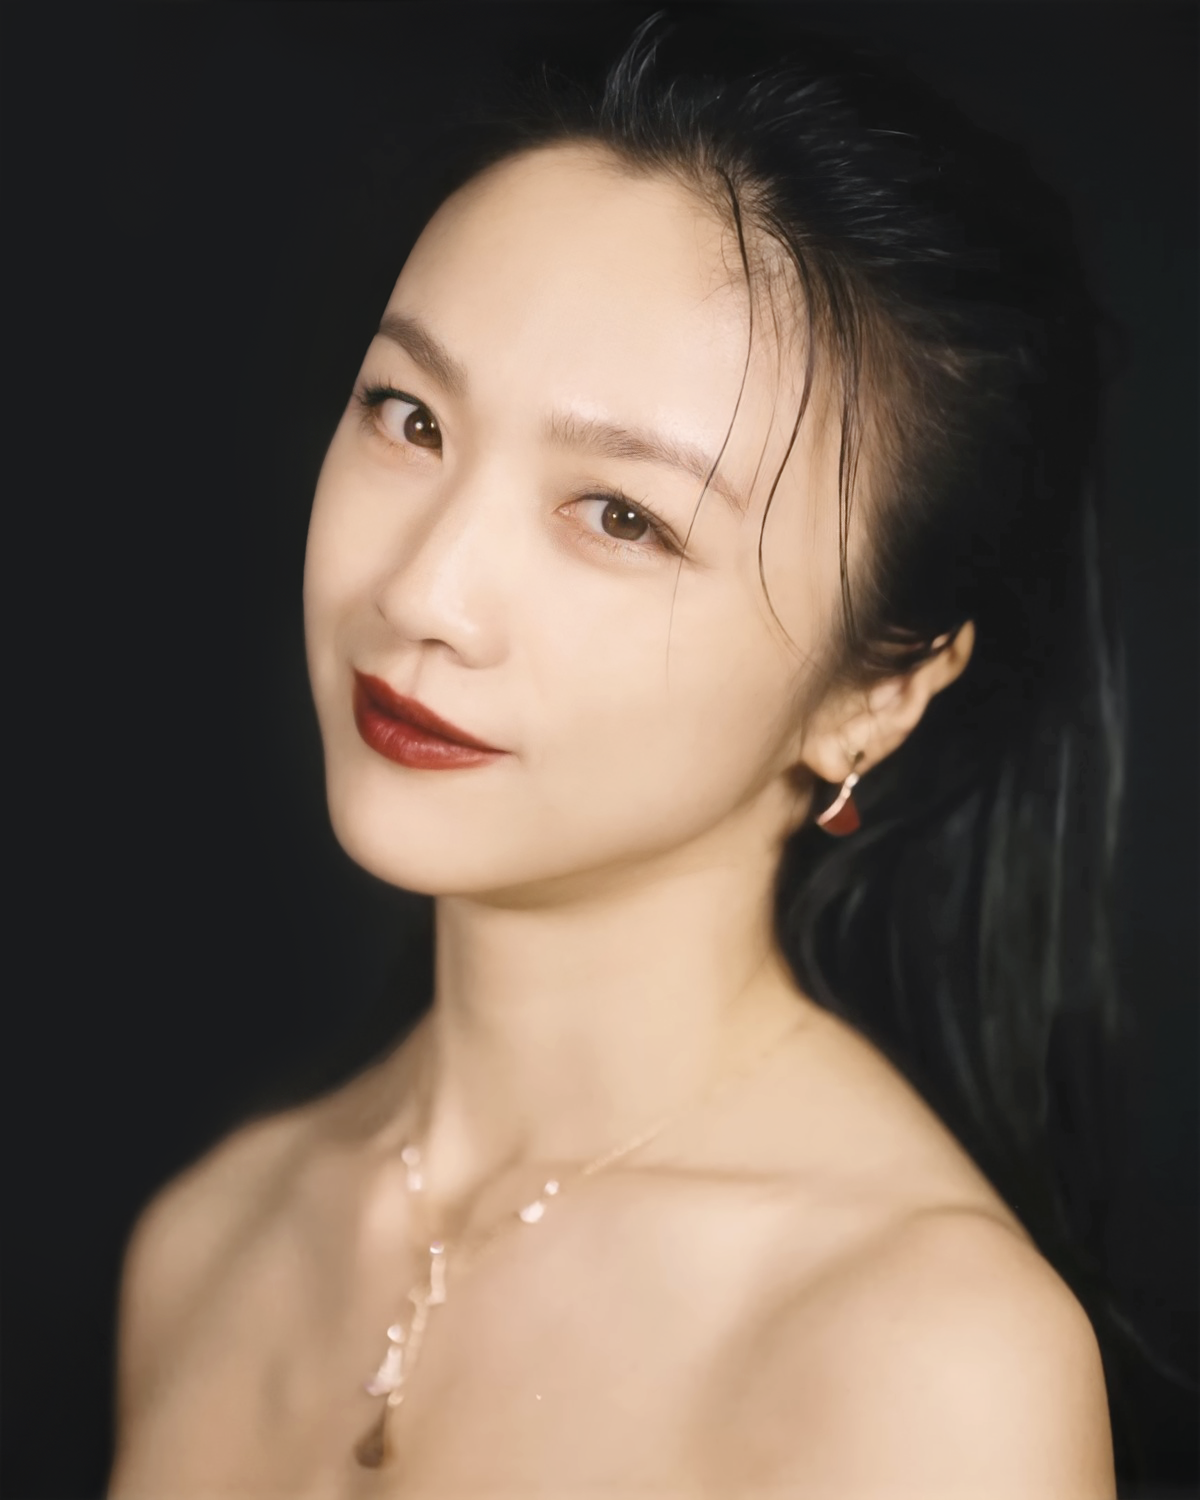 Tang Wei là một trong những diễn viên được yêu thích của điện ảnh Trung Quốc và Châu Á. Với vẻ đẹp trong trẻo và tài năng diễn xuất tuyệt vời, cô đã ghi dấu ấn sâu đậm trong lòng khán giả. Hãy cùng thưởng thức những hình ảnh xinh đẹp của Tang Wei trên Wikipedia!